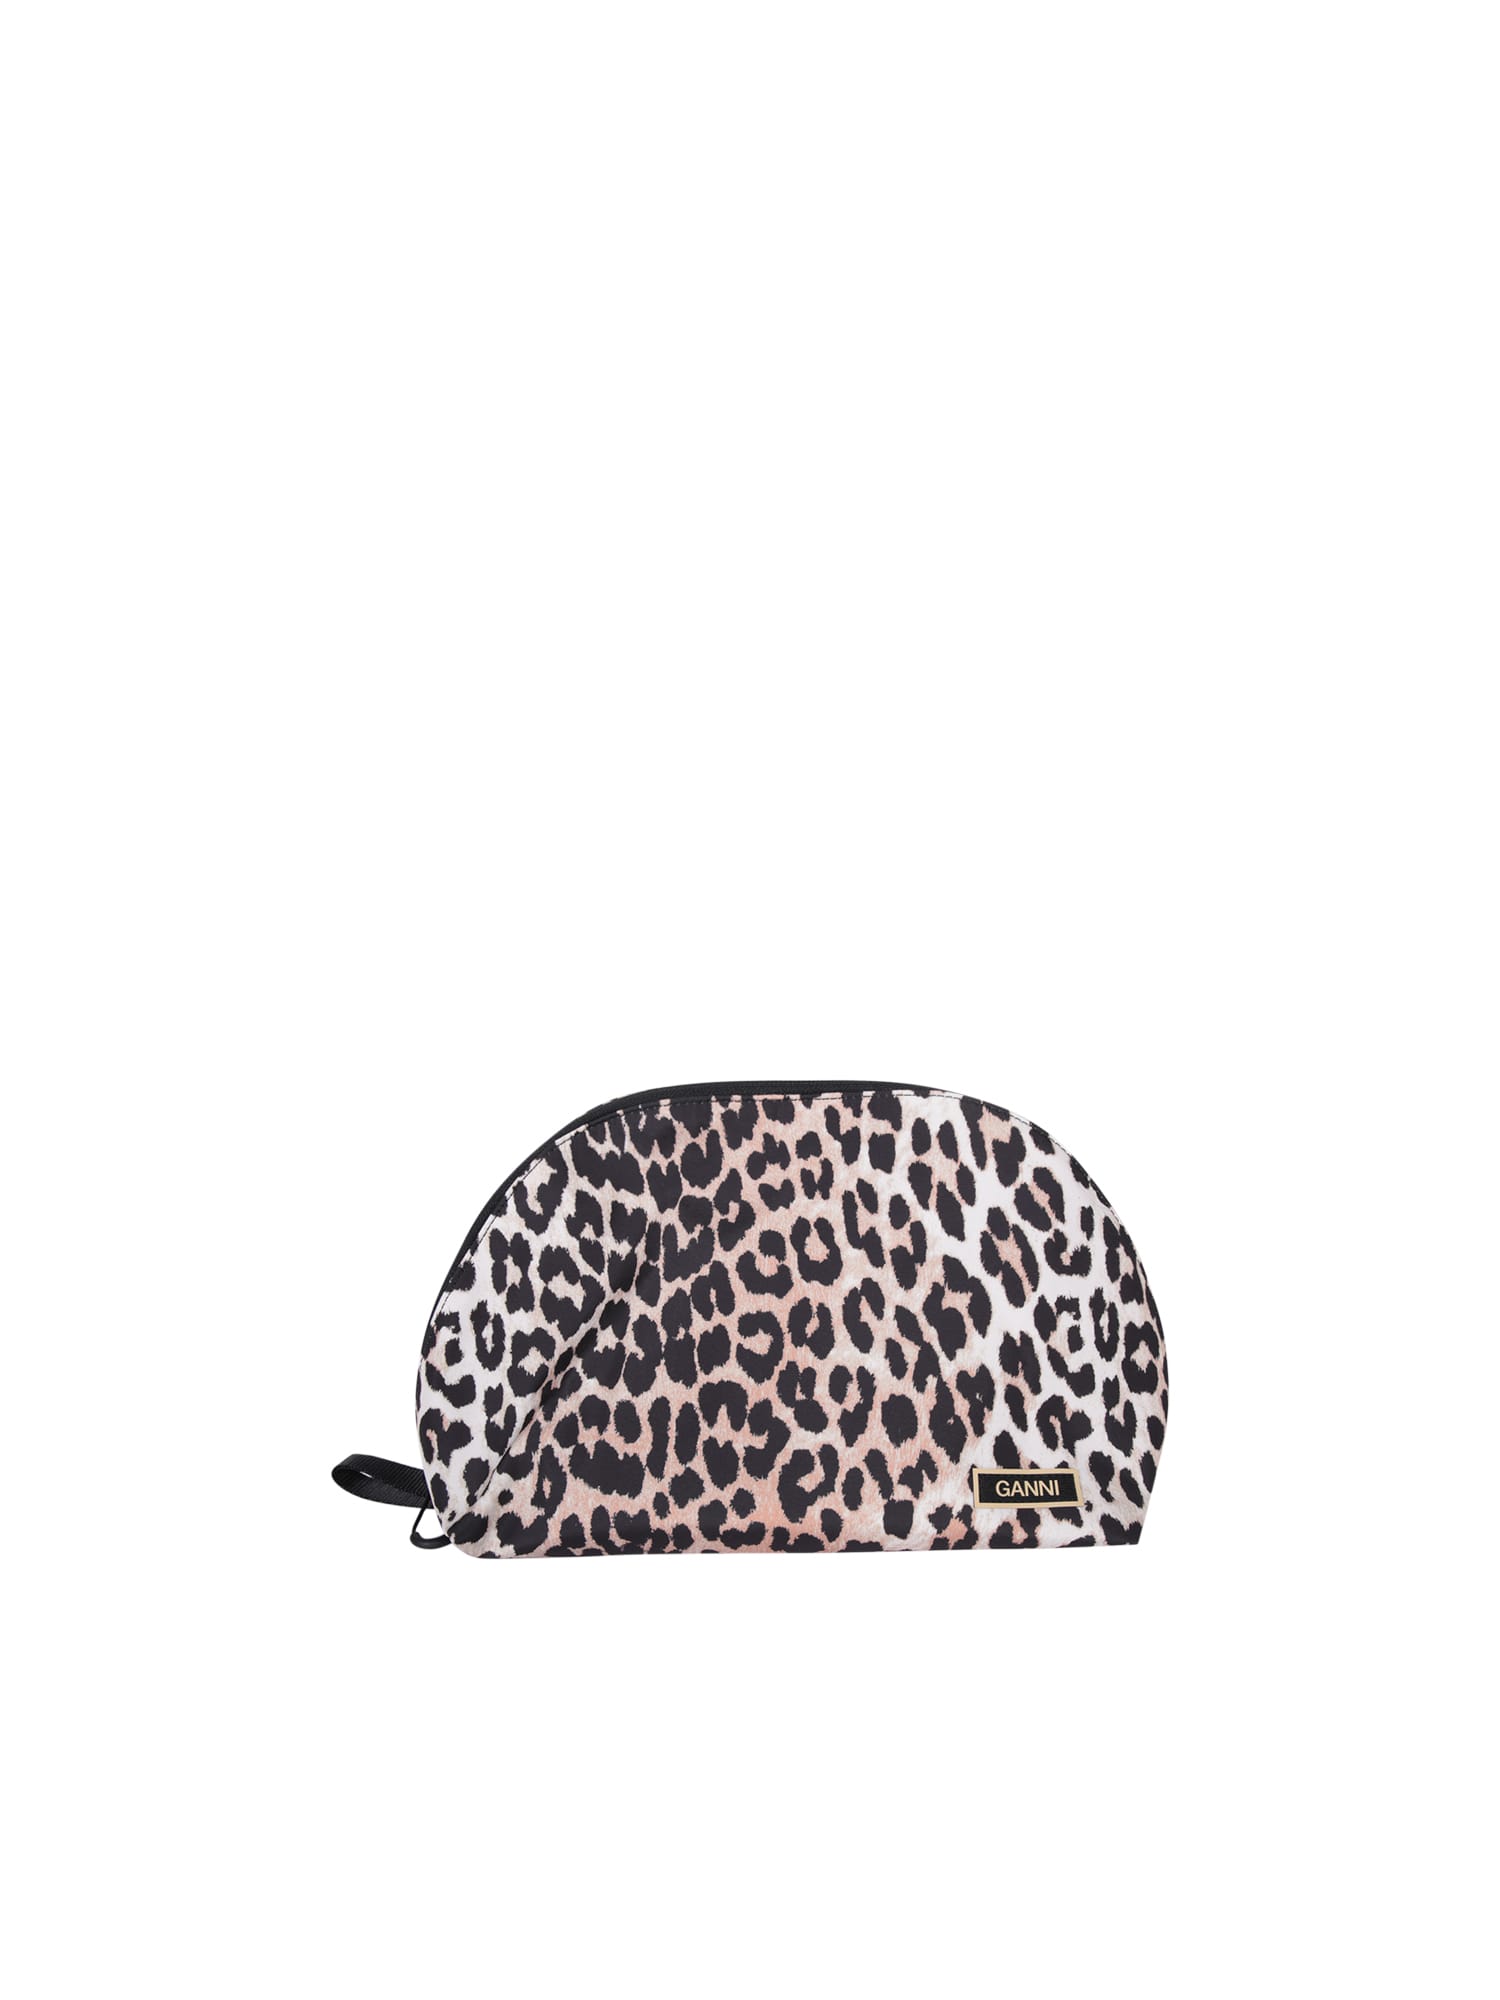 Leopard Beauty Case